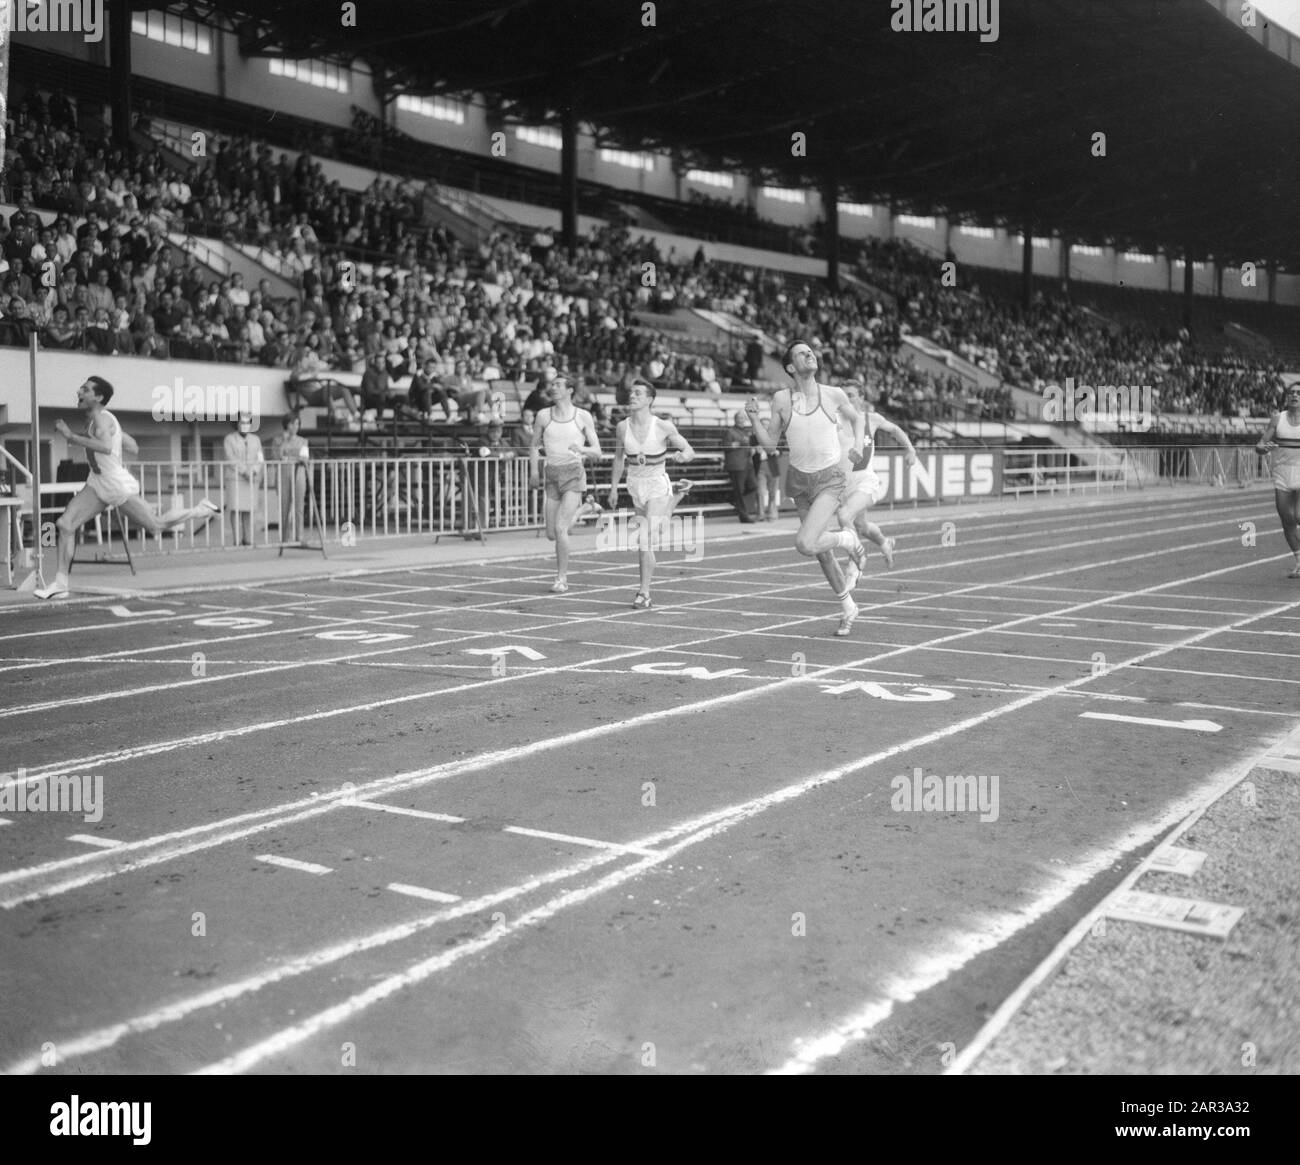 Länder Leichtathletik-Wettbewerb zwischen Belgien, den Niederlanden und der Schweiz in Brüssel war der Gewinner 400 Meter Descloux (Schweiz) (l) und zweiter Van Herpen (r) Datum: 10. Juli 1966 Standort: Belgien, Brüssel, Niederlande, Schweiz Schlagwörter: Sieger, Leichtathletik-Wettbewerbe Stockfoto